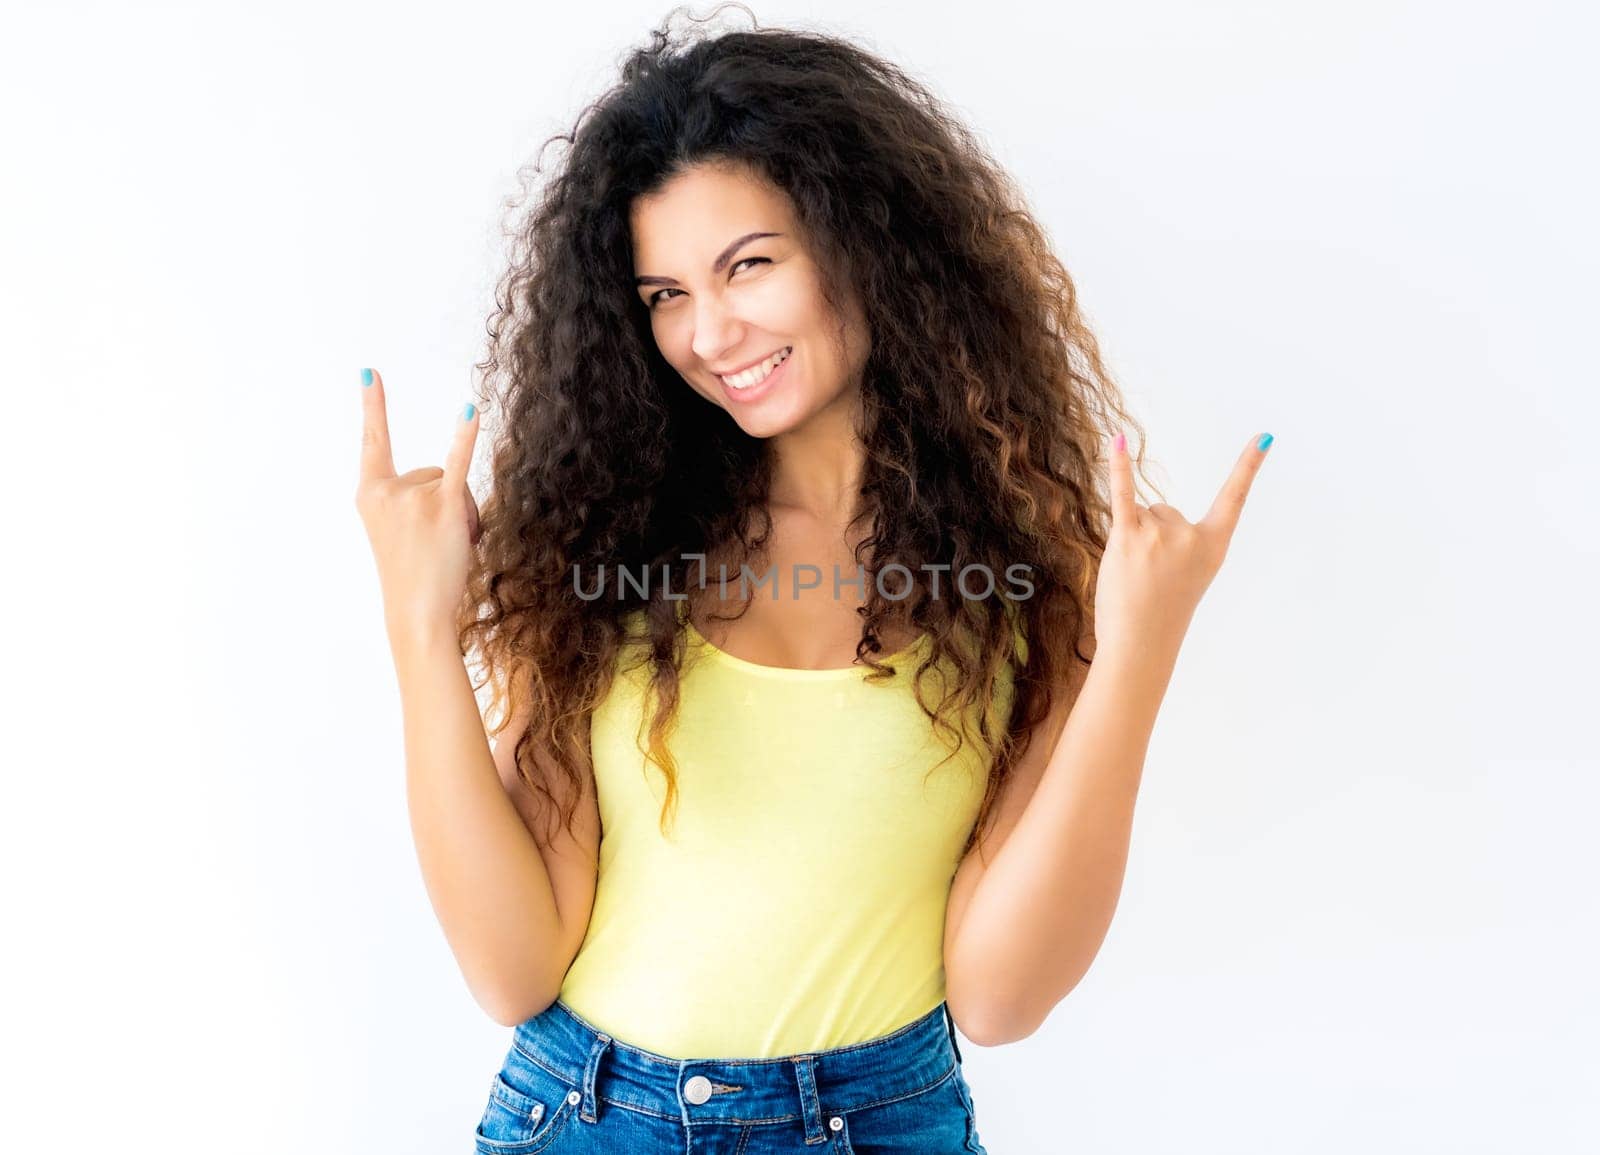 Girl showing devil horns gesture by GekaSkr